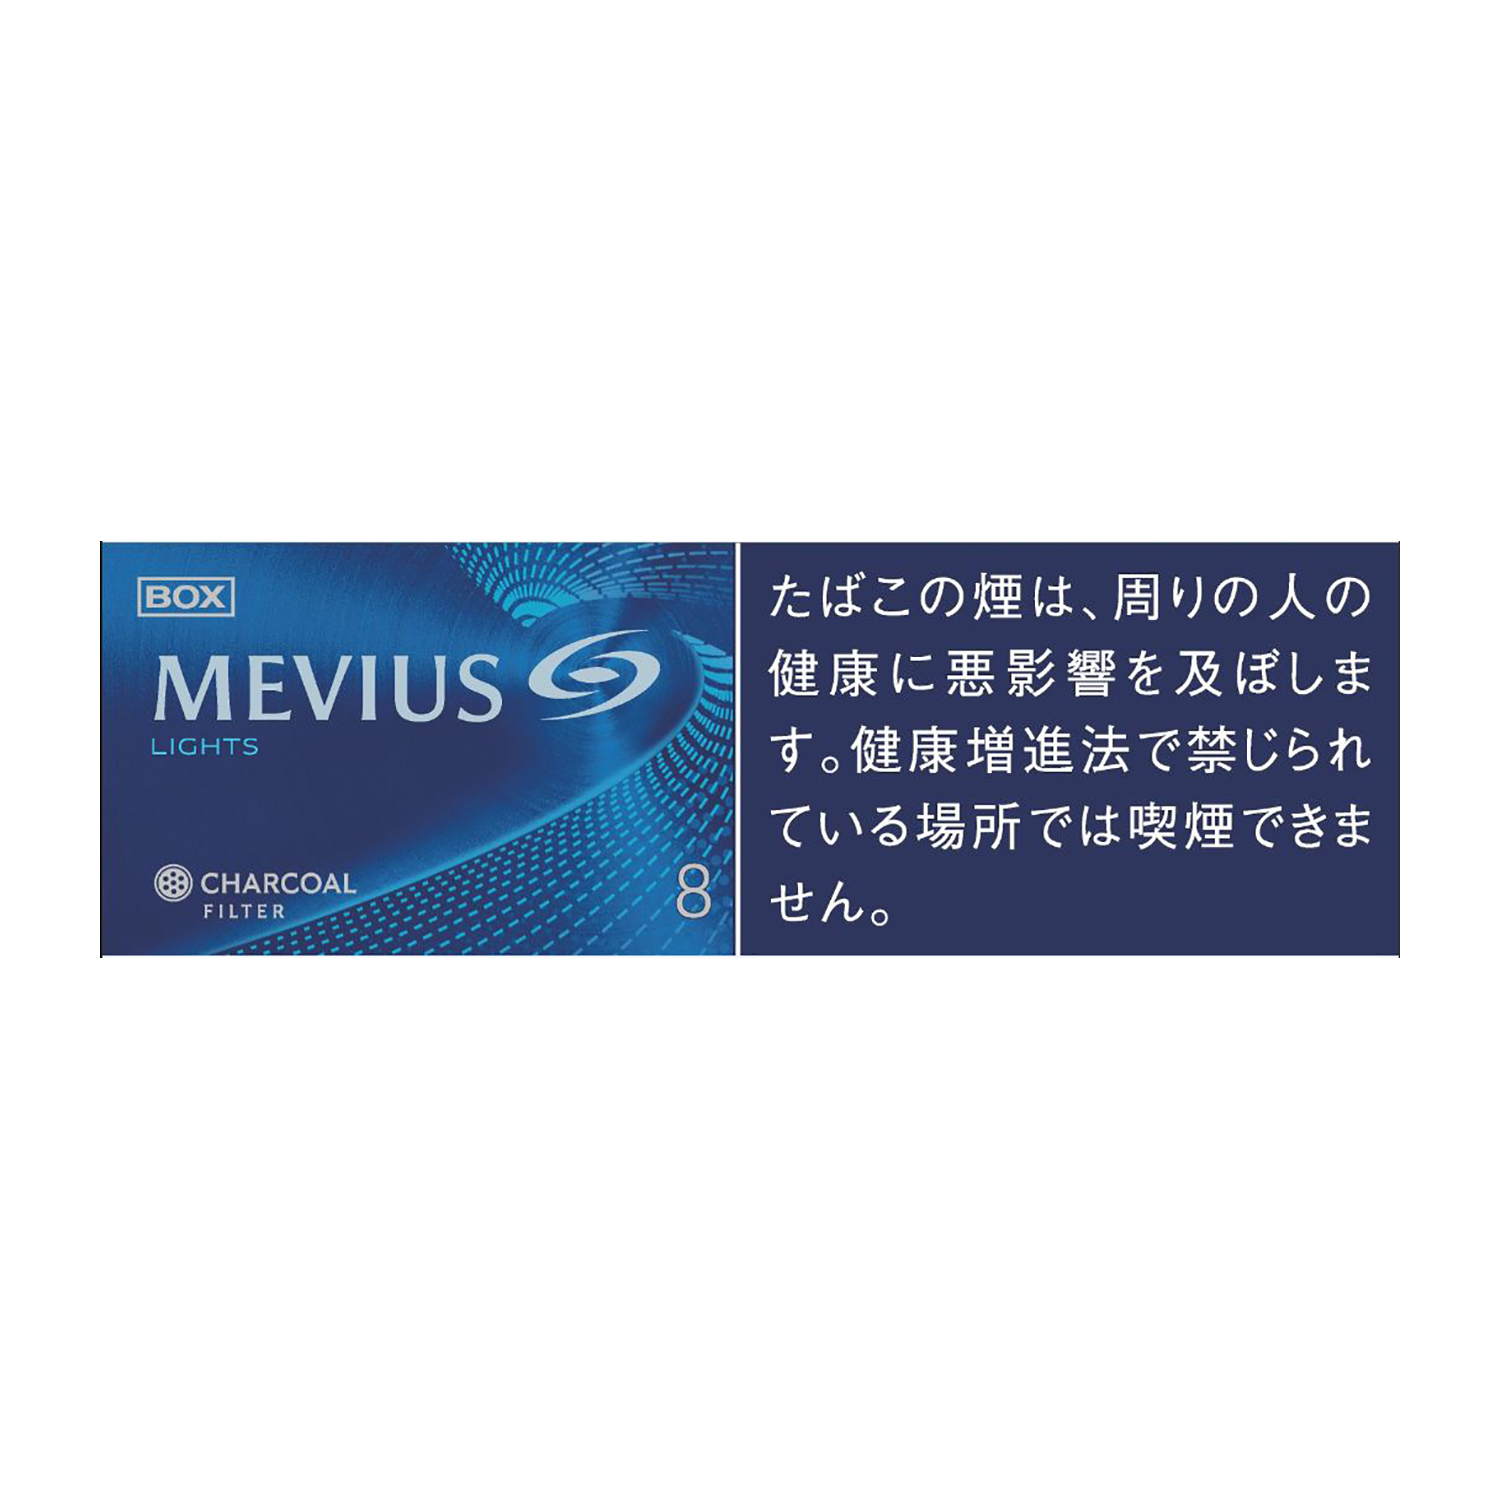 MEVIUS LIGHTS BOX / Tar:8mg Nicotine:0.7mg